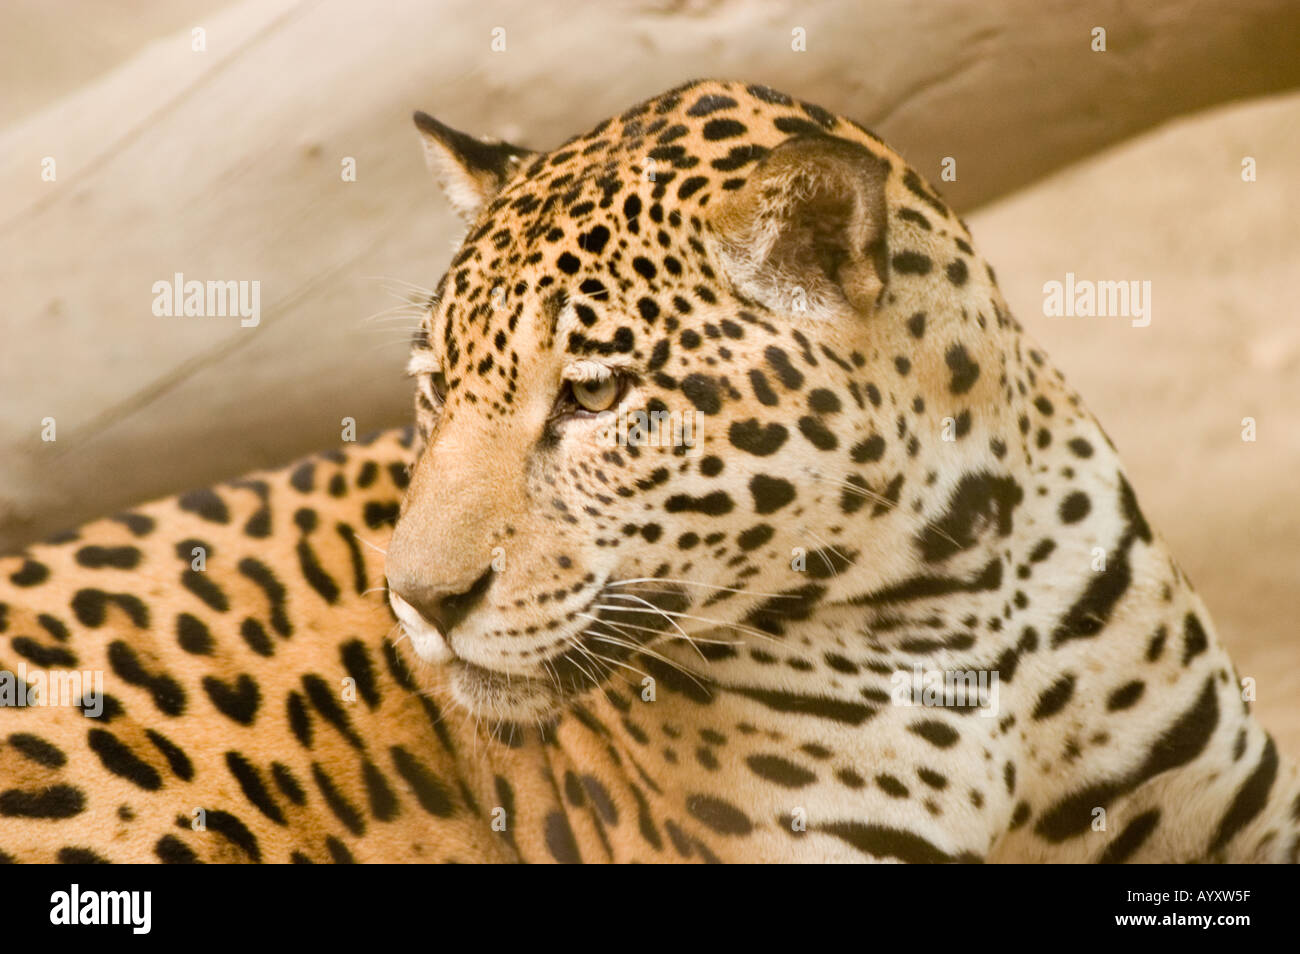 Jaguar Panther Panthera Onca Endangered animal Stock Photo - Alamy